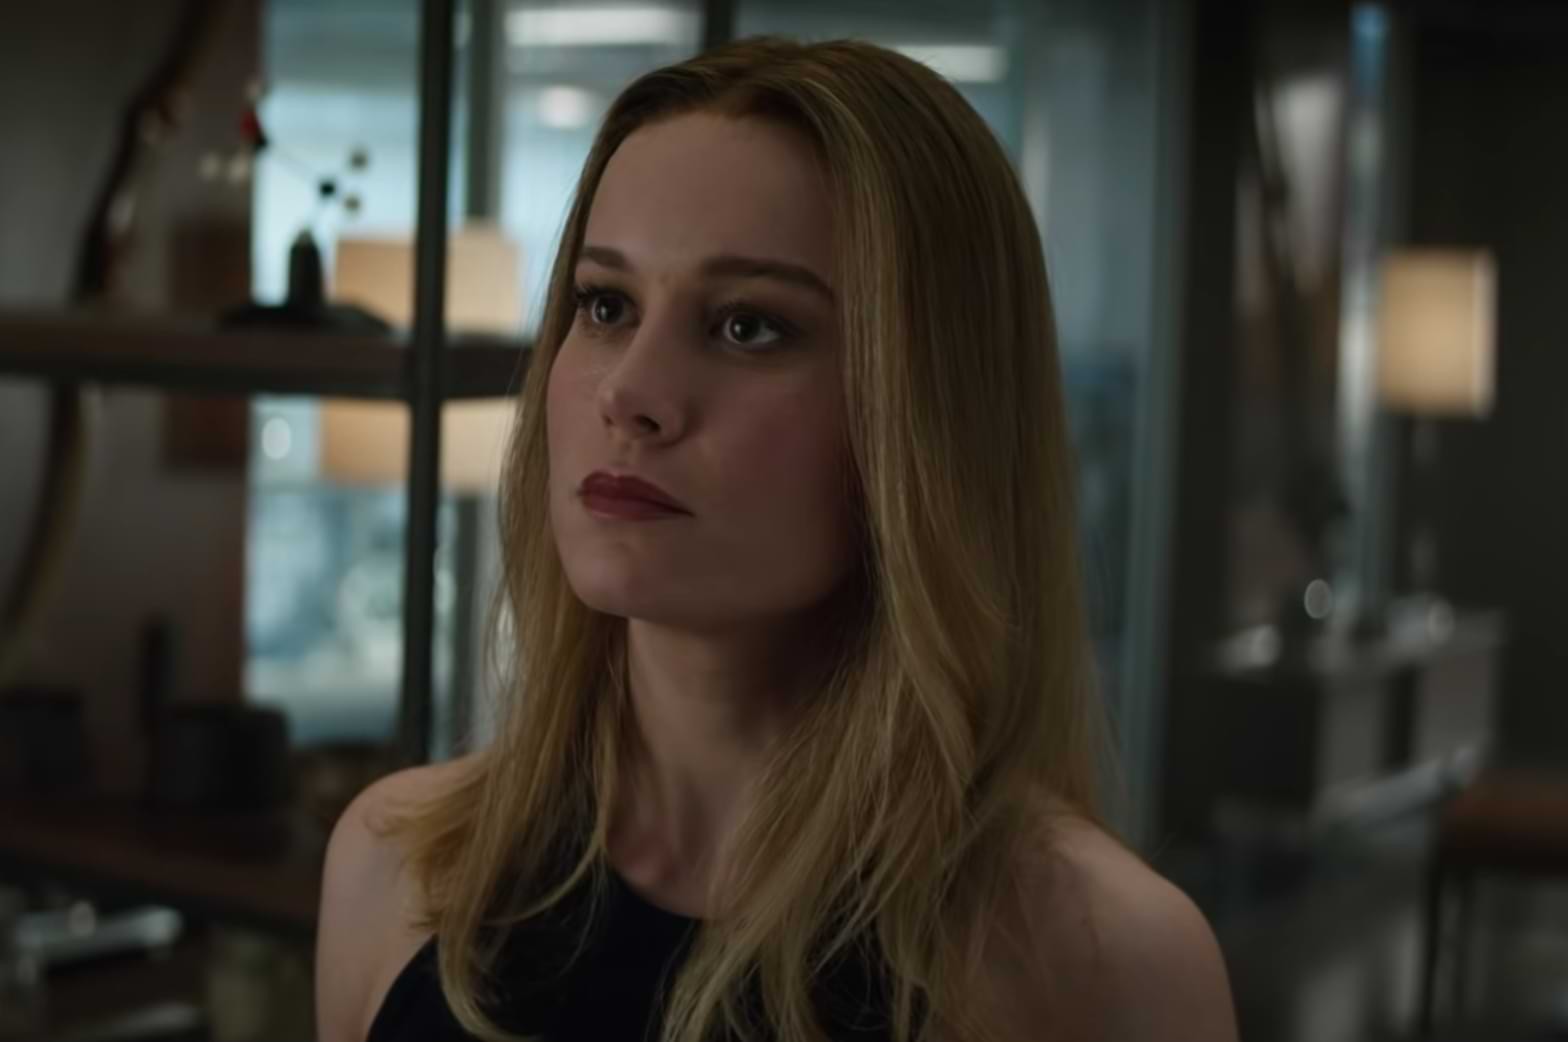 Brie Larson as Captain Marvel in Avengers: Endgame (2019).